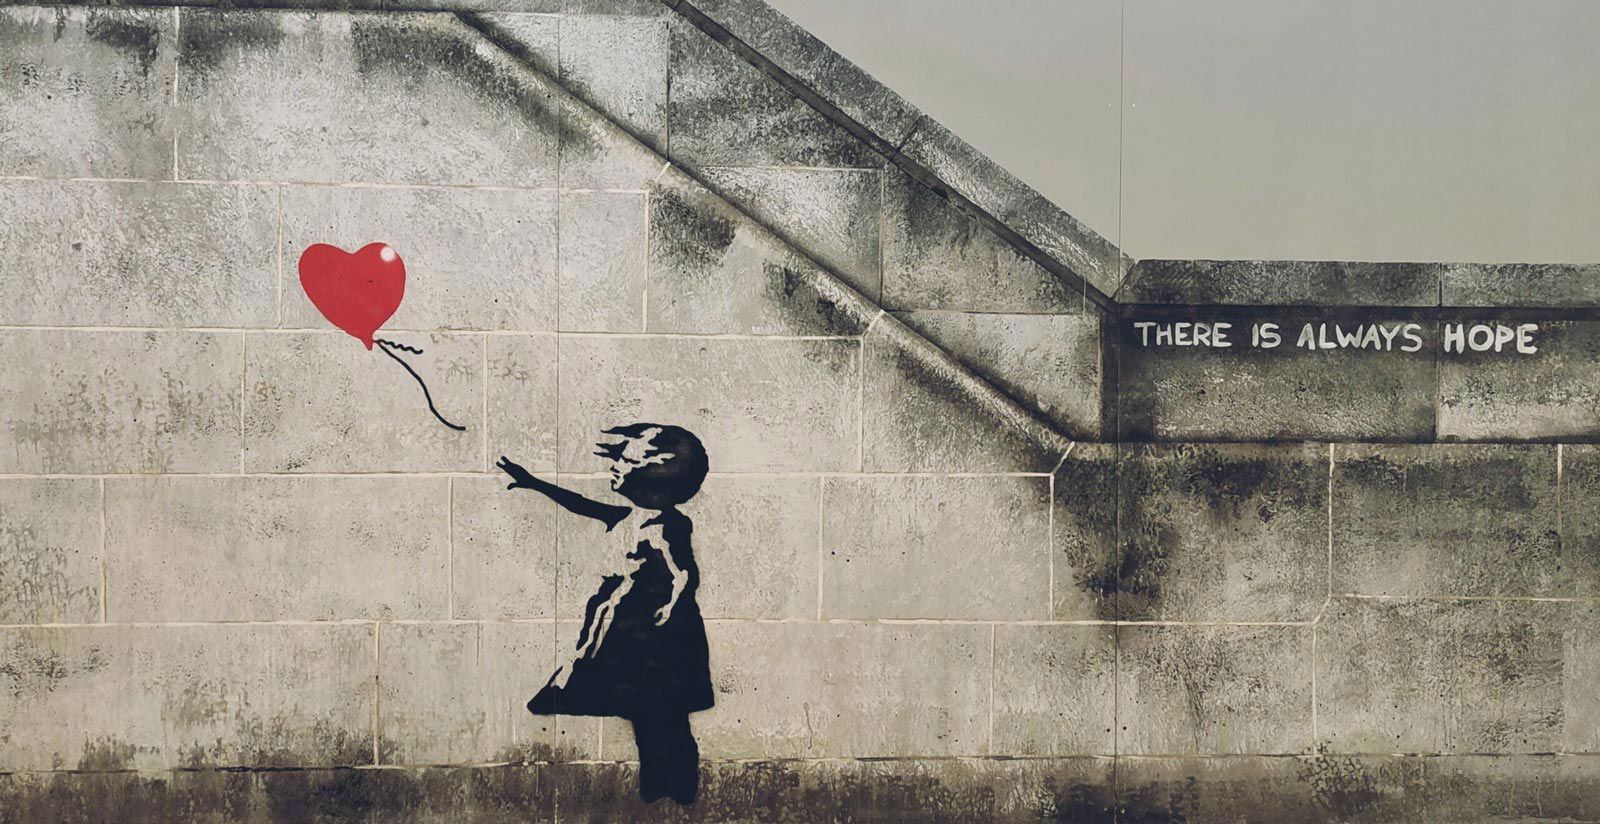 Banksy et les Mura Urbiche (Murs de la ville) 2